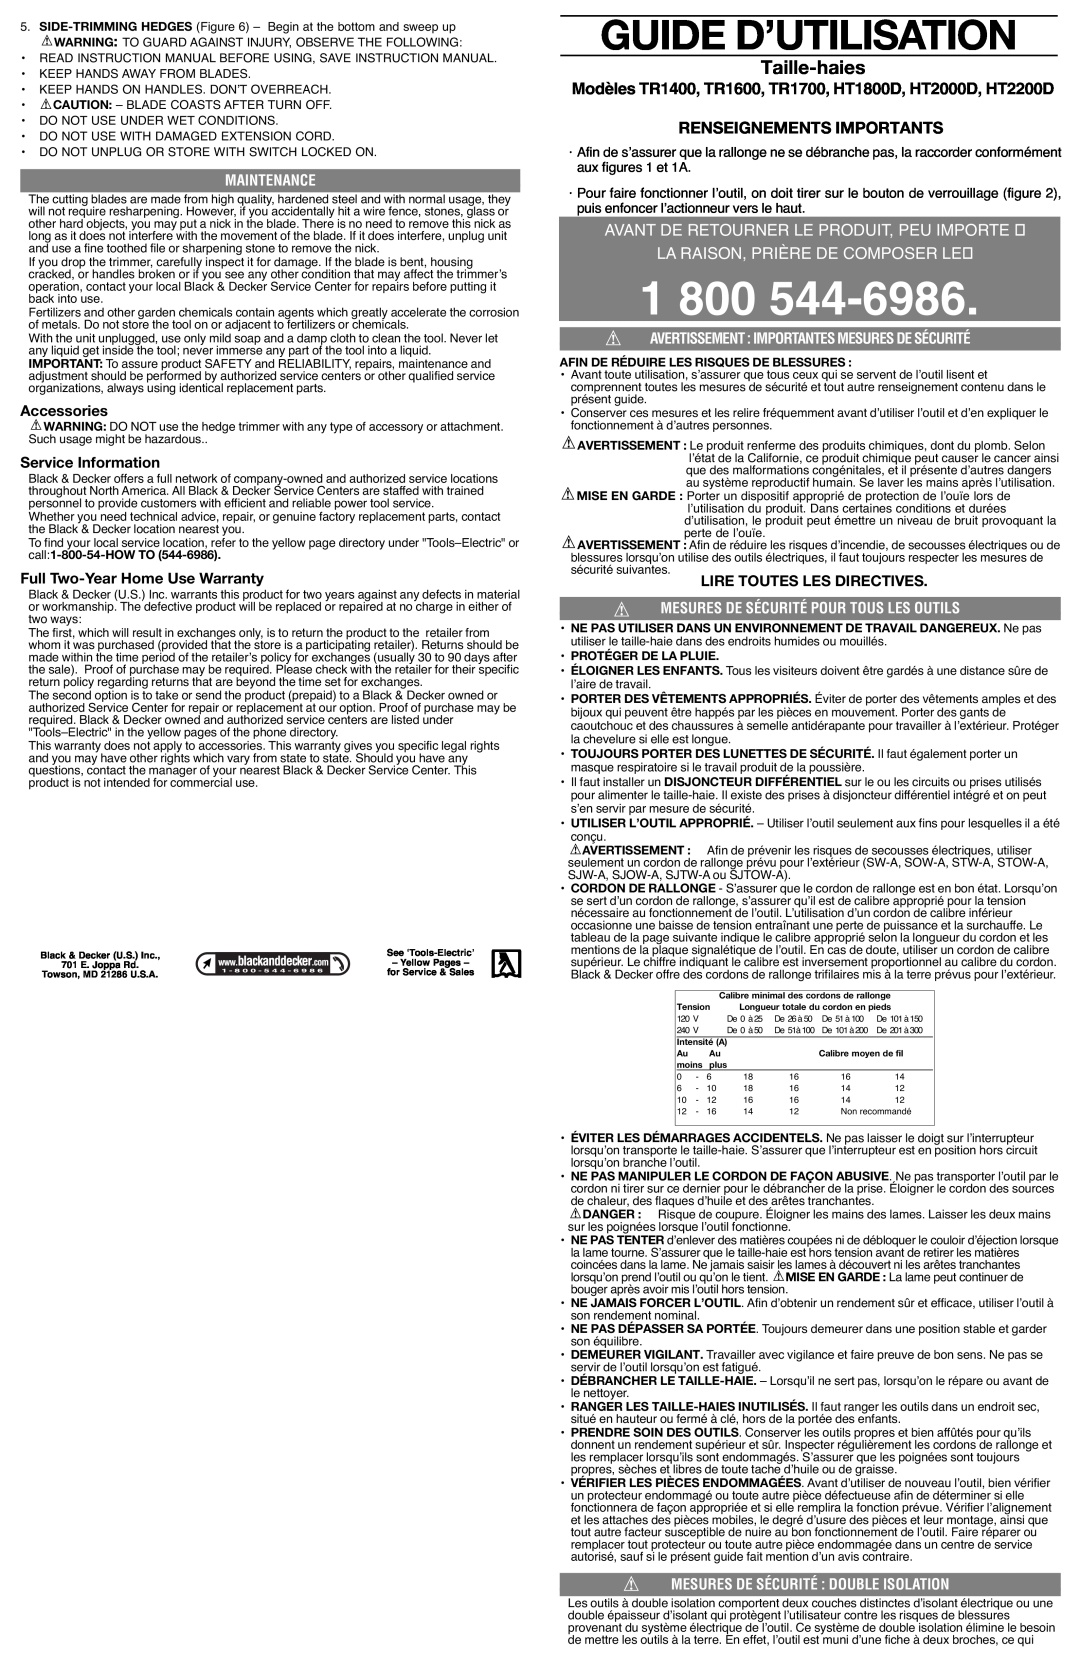 Black & Decker HT1800D Guide D’Utilisation, Taille-haies, Renseignements Importants, La Raison, Prière De Composer Le 